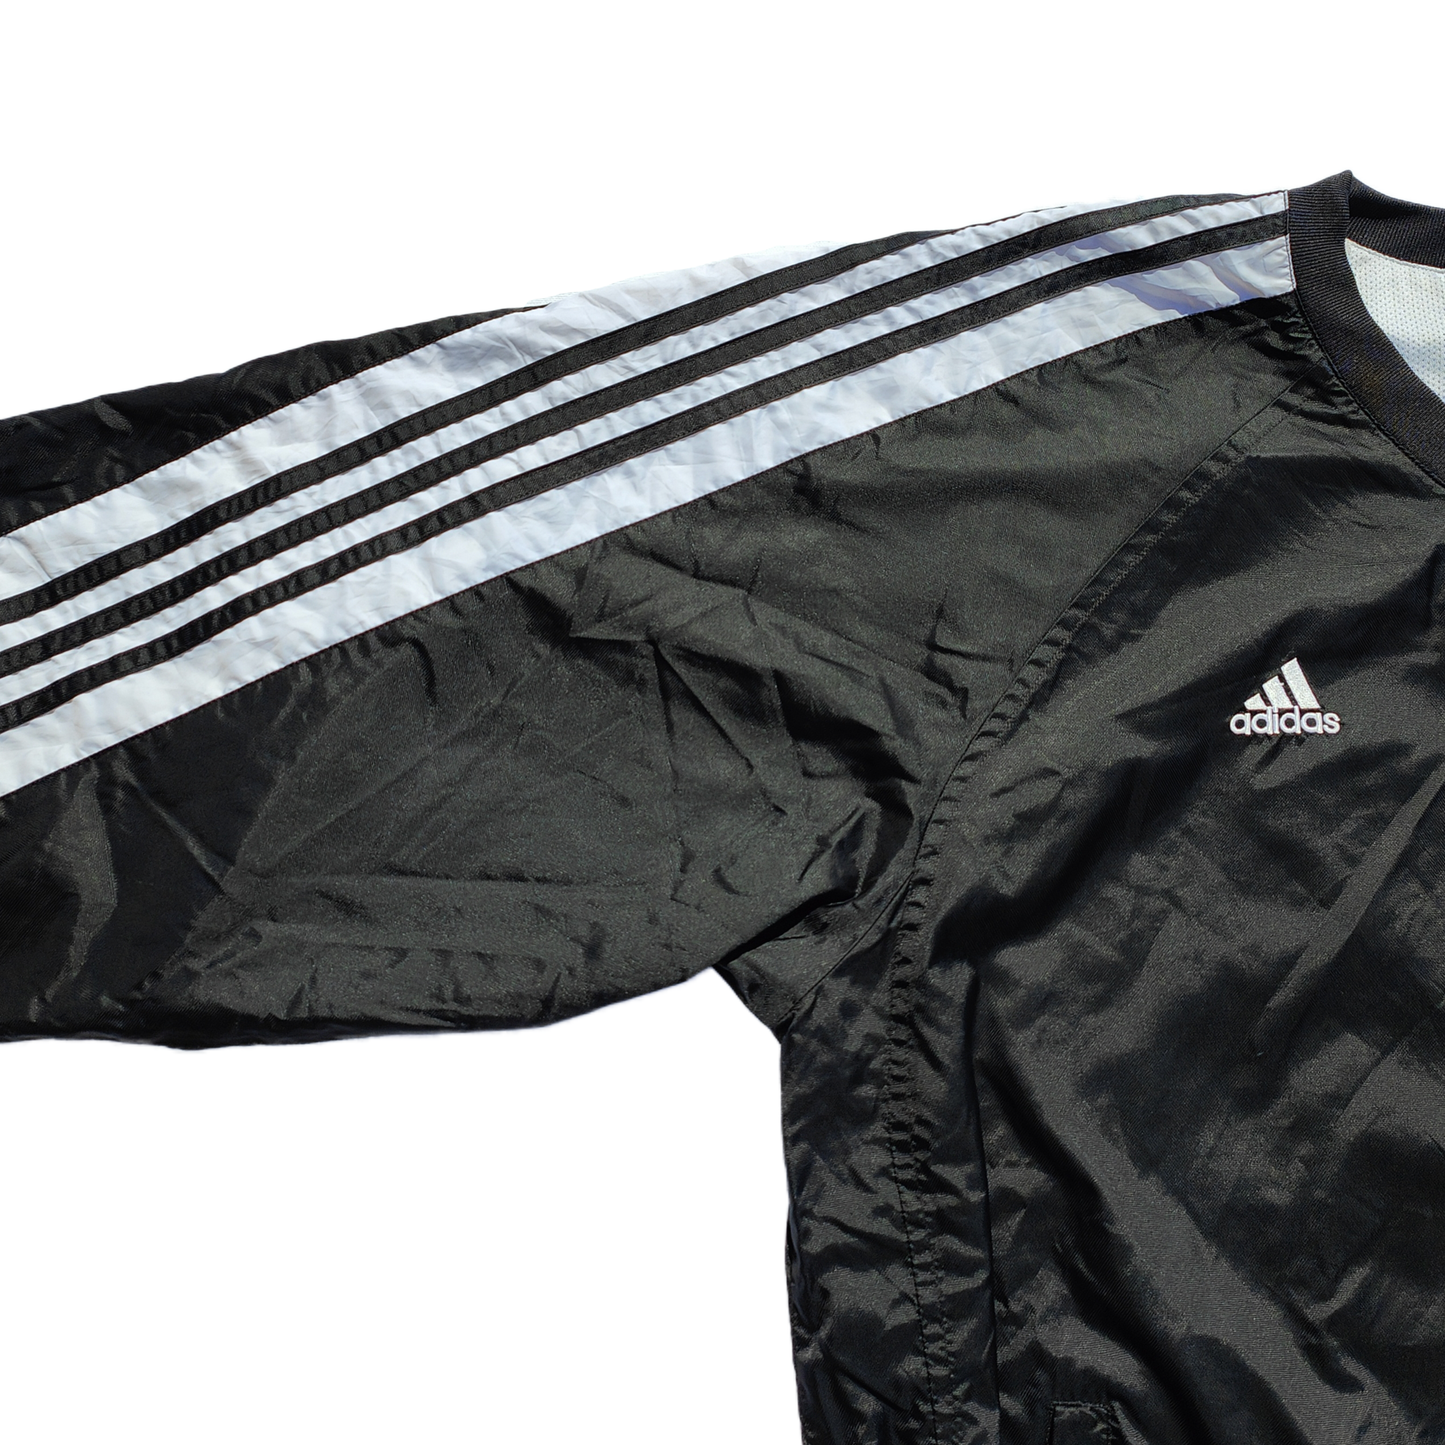 Adidas Track Jacket (Salem Soccer) - MEDIUM